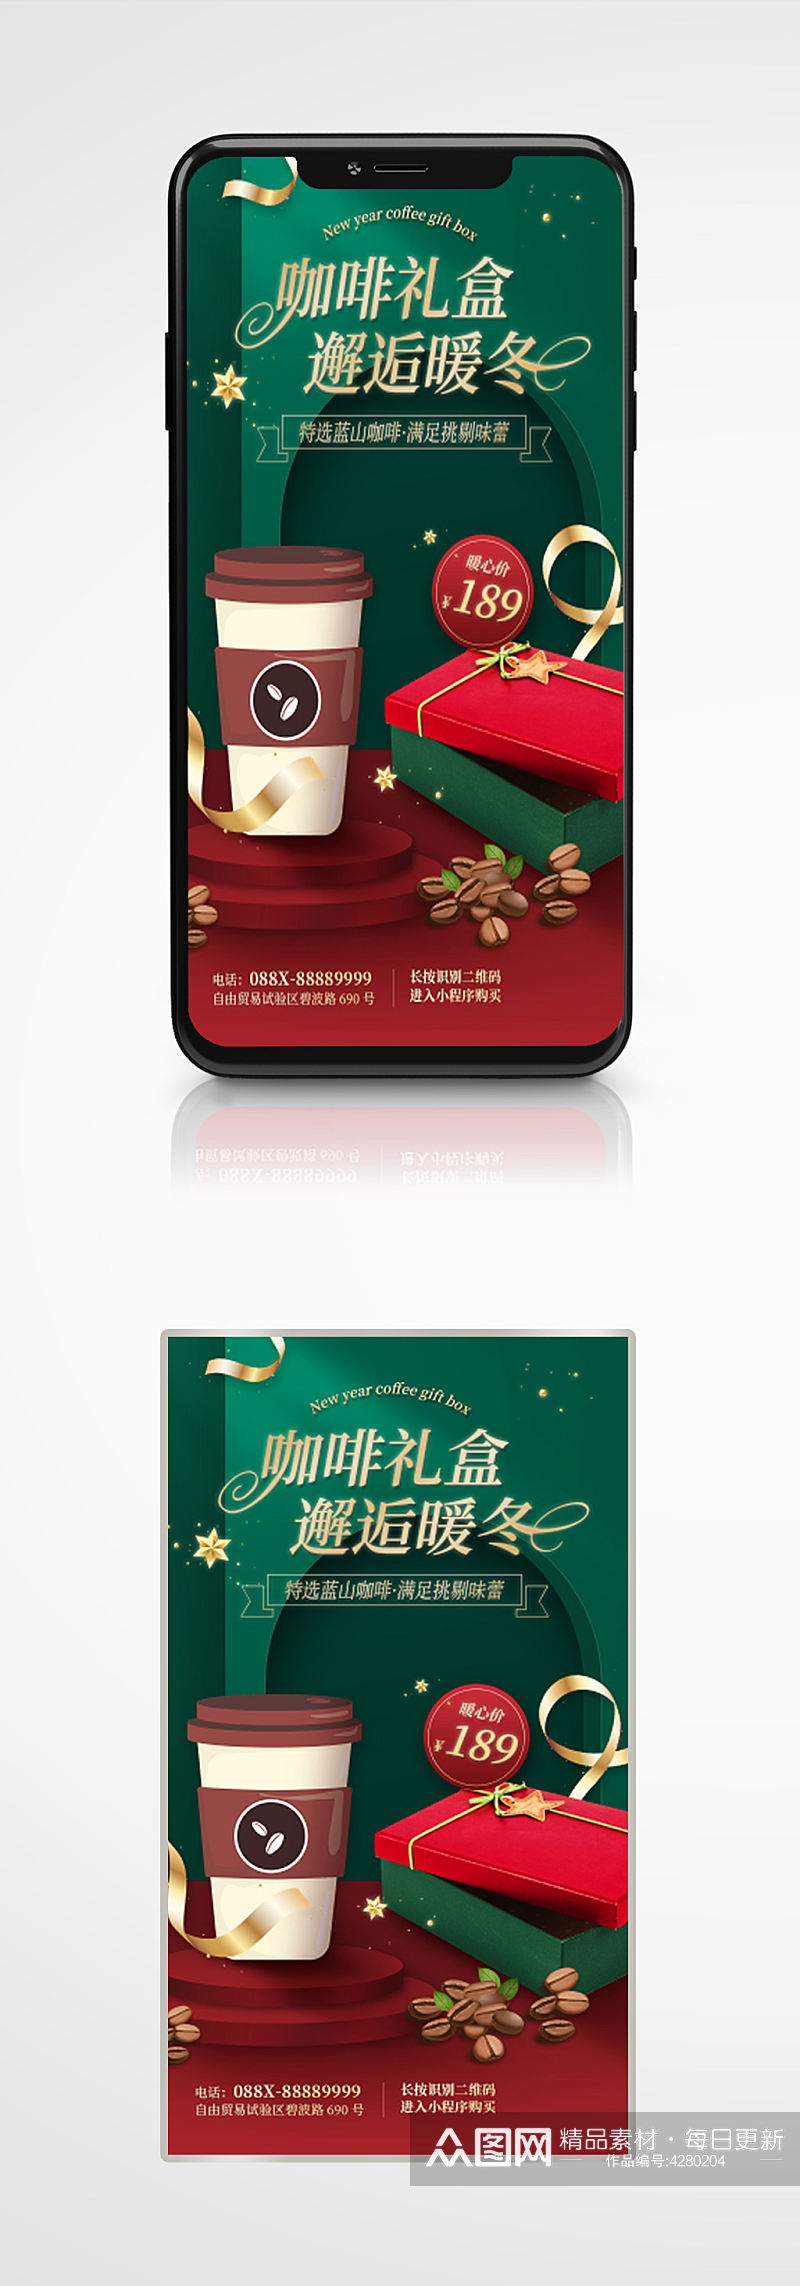 咖啡礼盒节日活动促销手机海报绿色奶茶素材